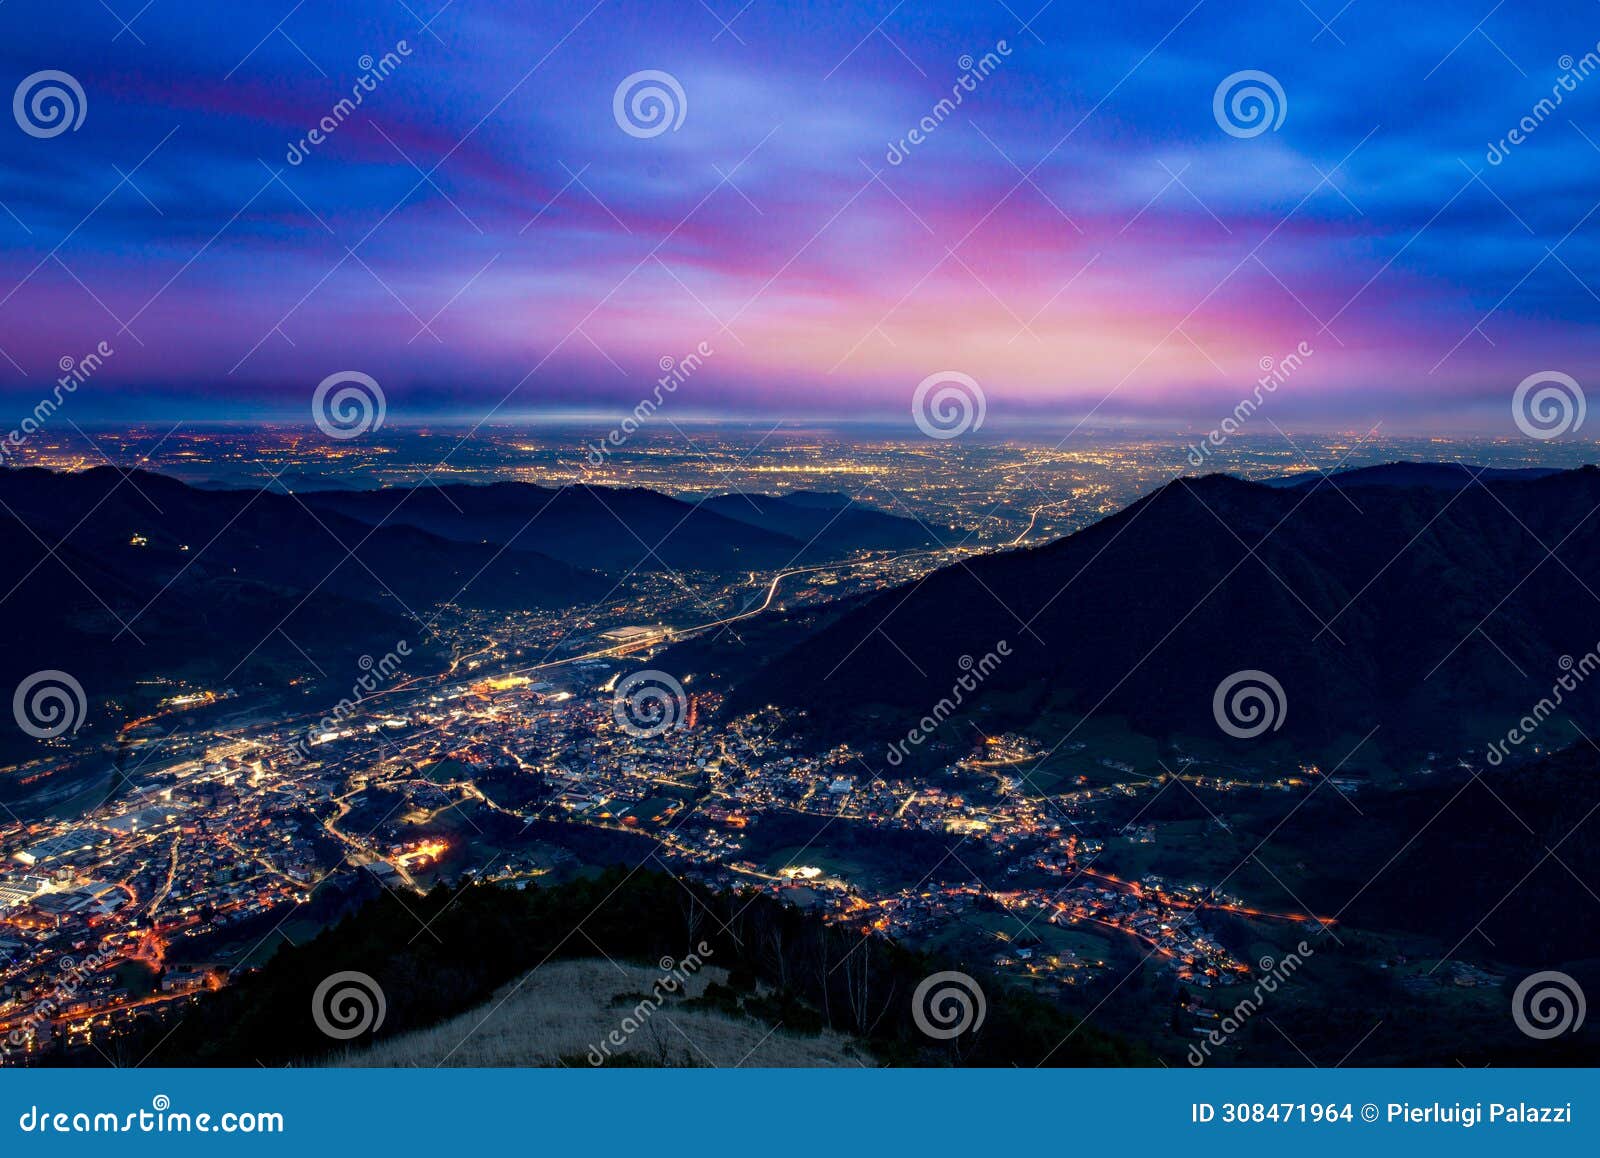 seriana valley illuminated at sunset